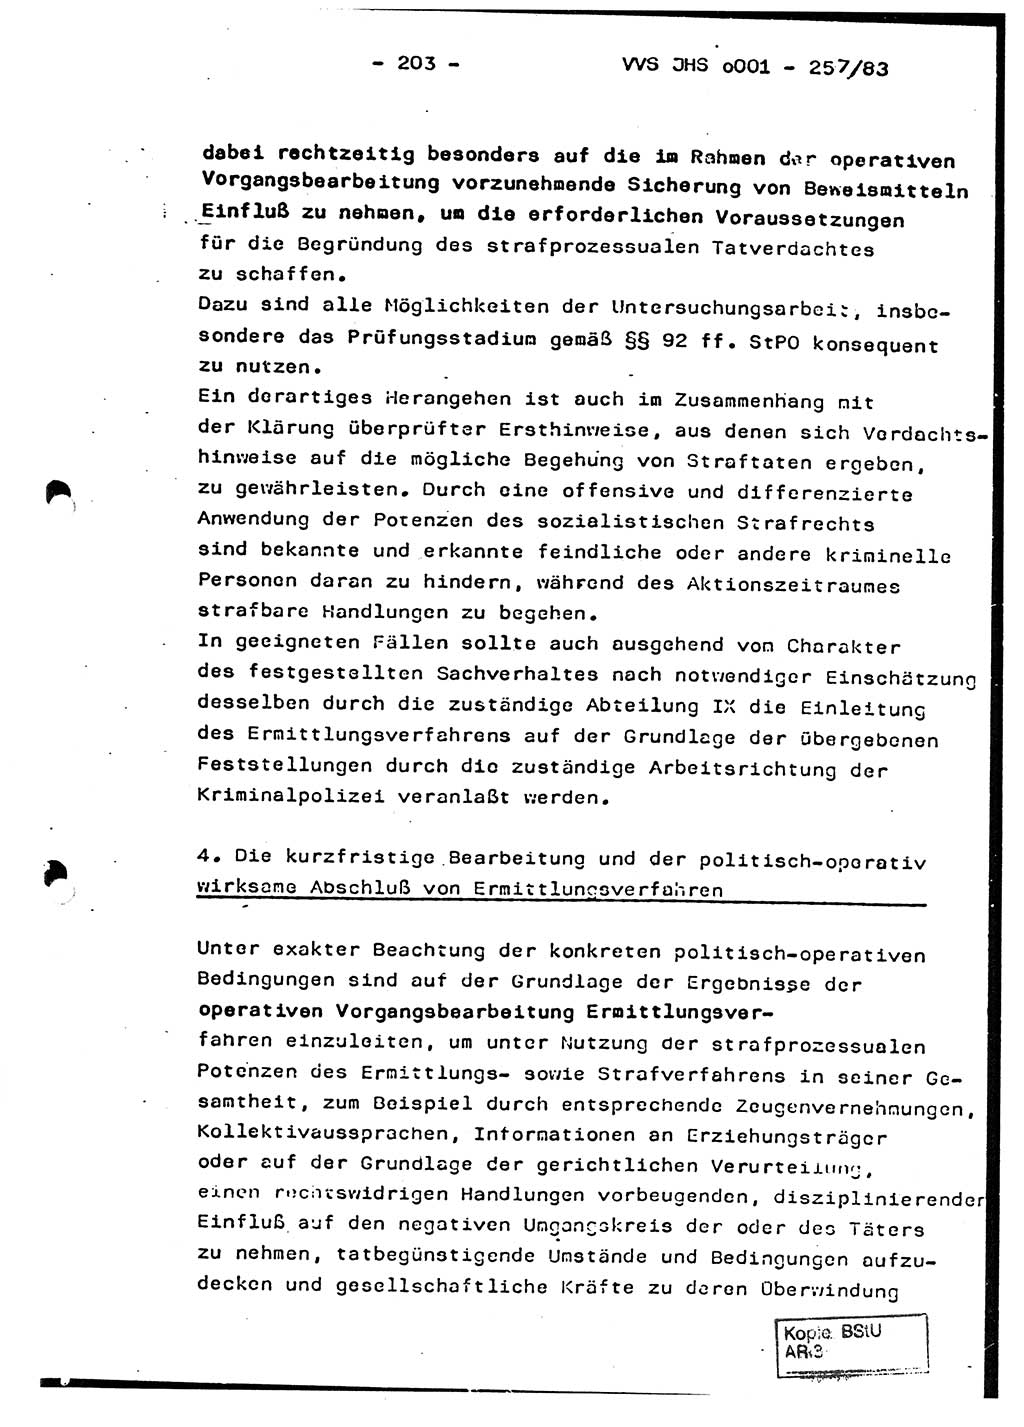 Dissertation, Oberst Helmut Lubas (BV Mdg.), Oberstleutnant Manfred Eschberger (HA IX), Oberleutnant Hans-Jürgen Ludwig (JHS), Ministerium für Staatssicherheit (MfS) [Deutsche Demokratische Republik (DDR)], Juristische Hochschule (JHS), Vertrauliche Verschlußsache (VVS) o001-257/83, Potsdam 1983, Seite 203 (Diss. MfS DDR JHS VVS o001-257/83 1983, S. 203)